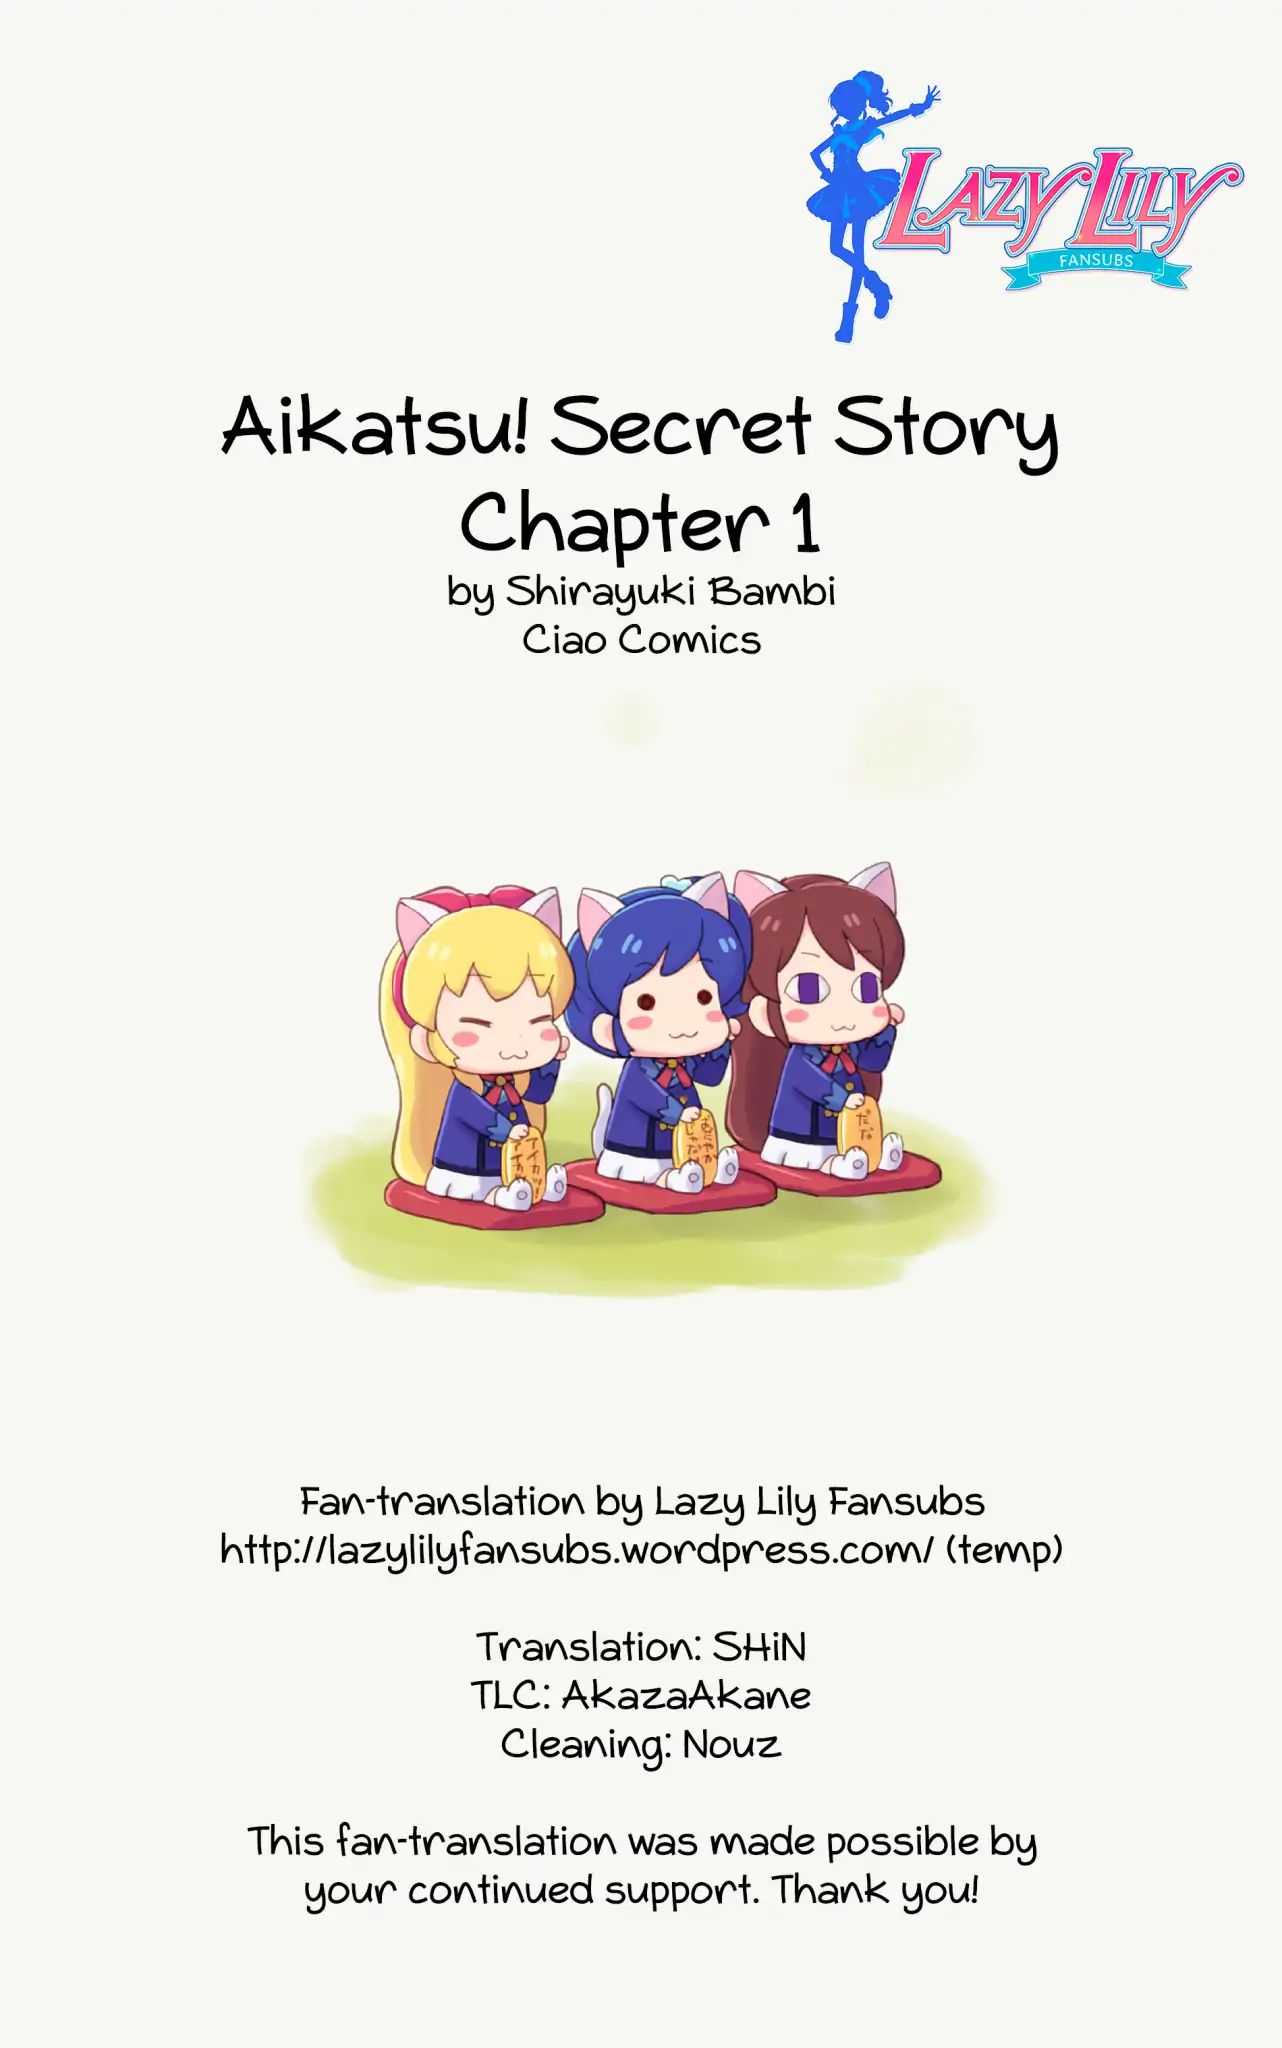 Aikatsu! Secret Story Vol.1 Chapter 1